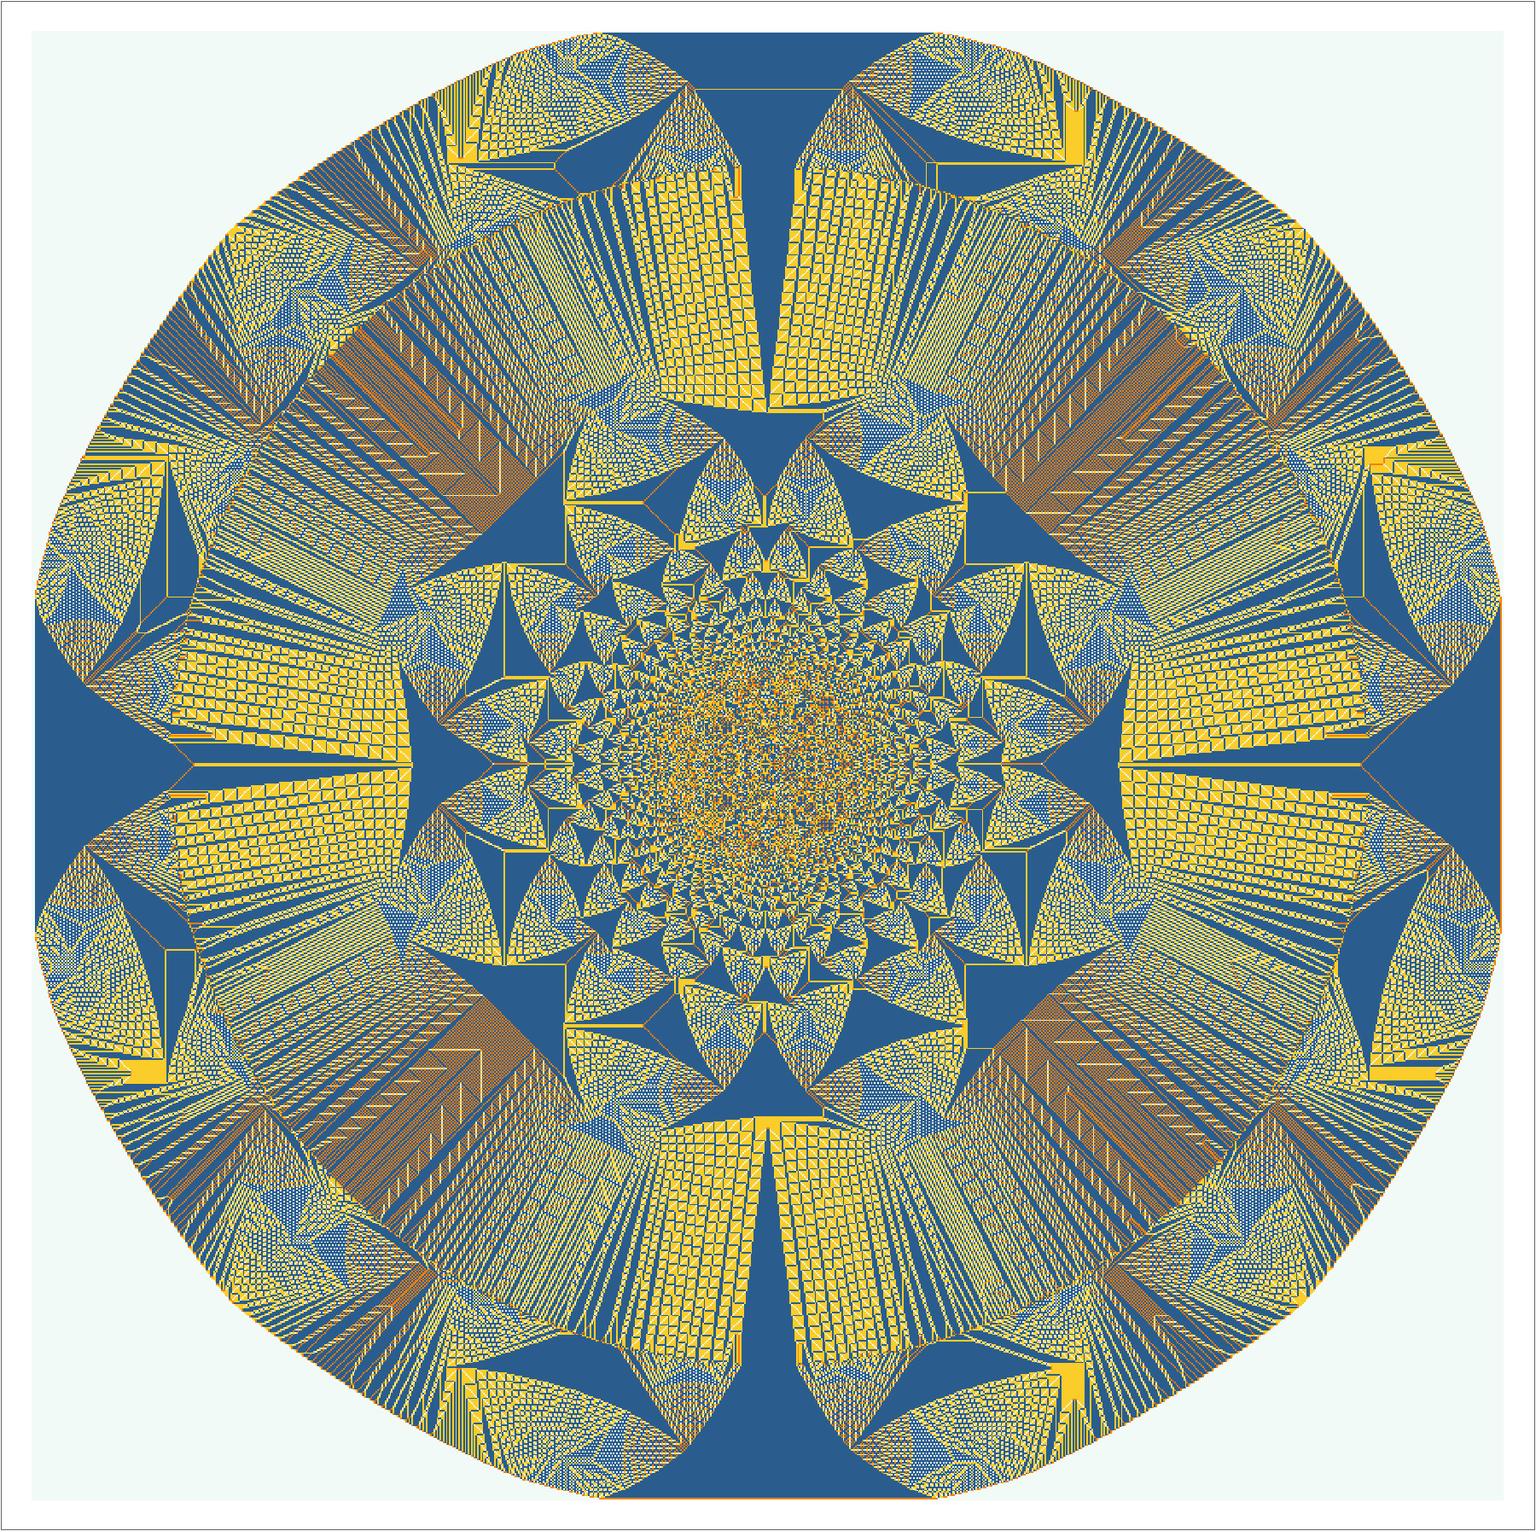 Image for entry 'Sandpile Fractile Disk'